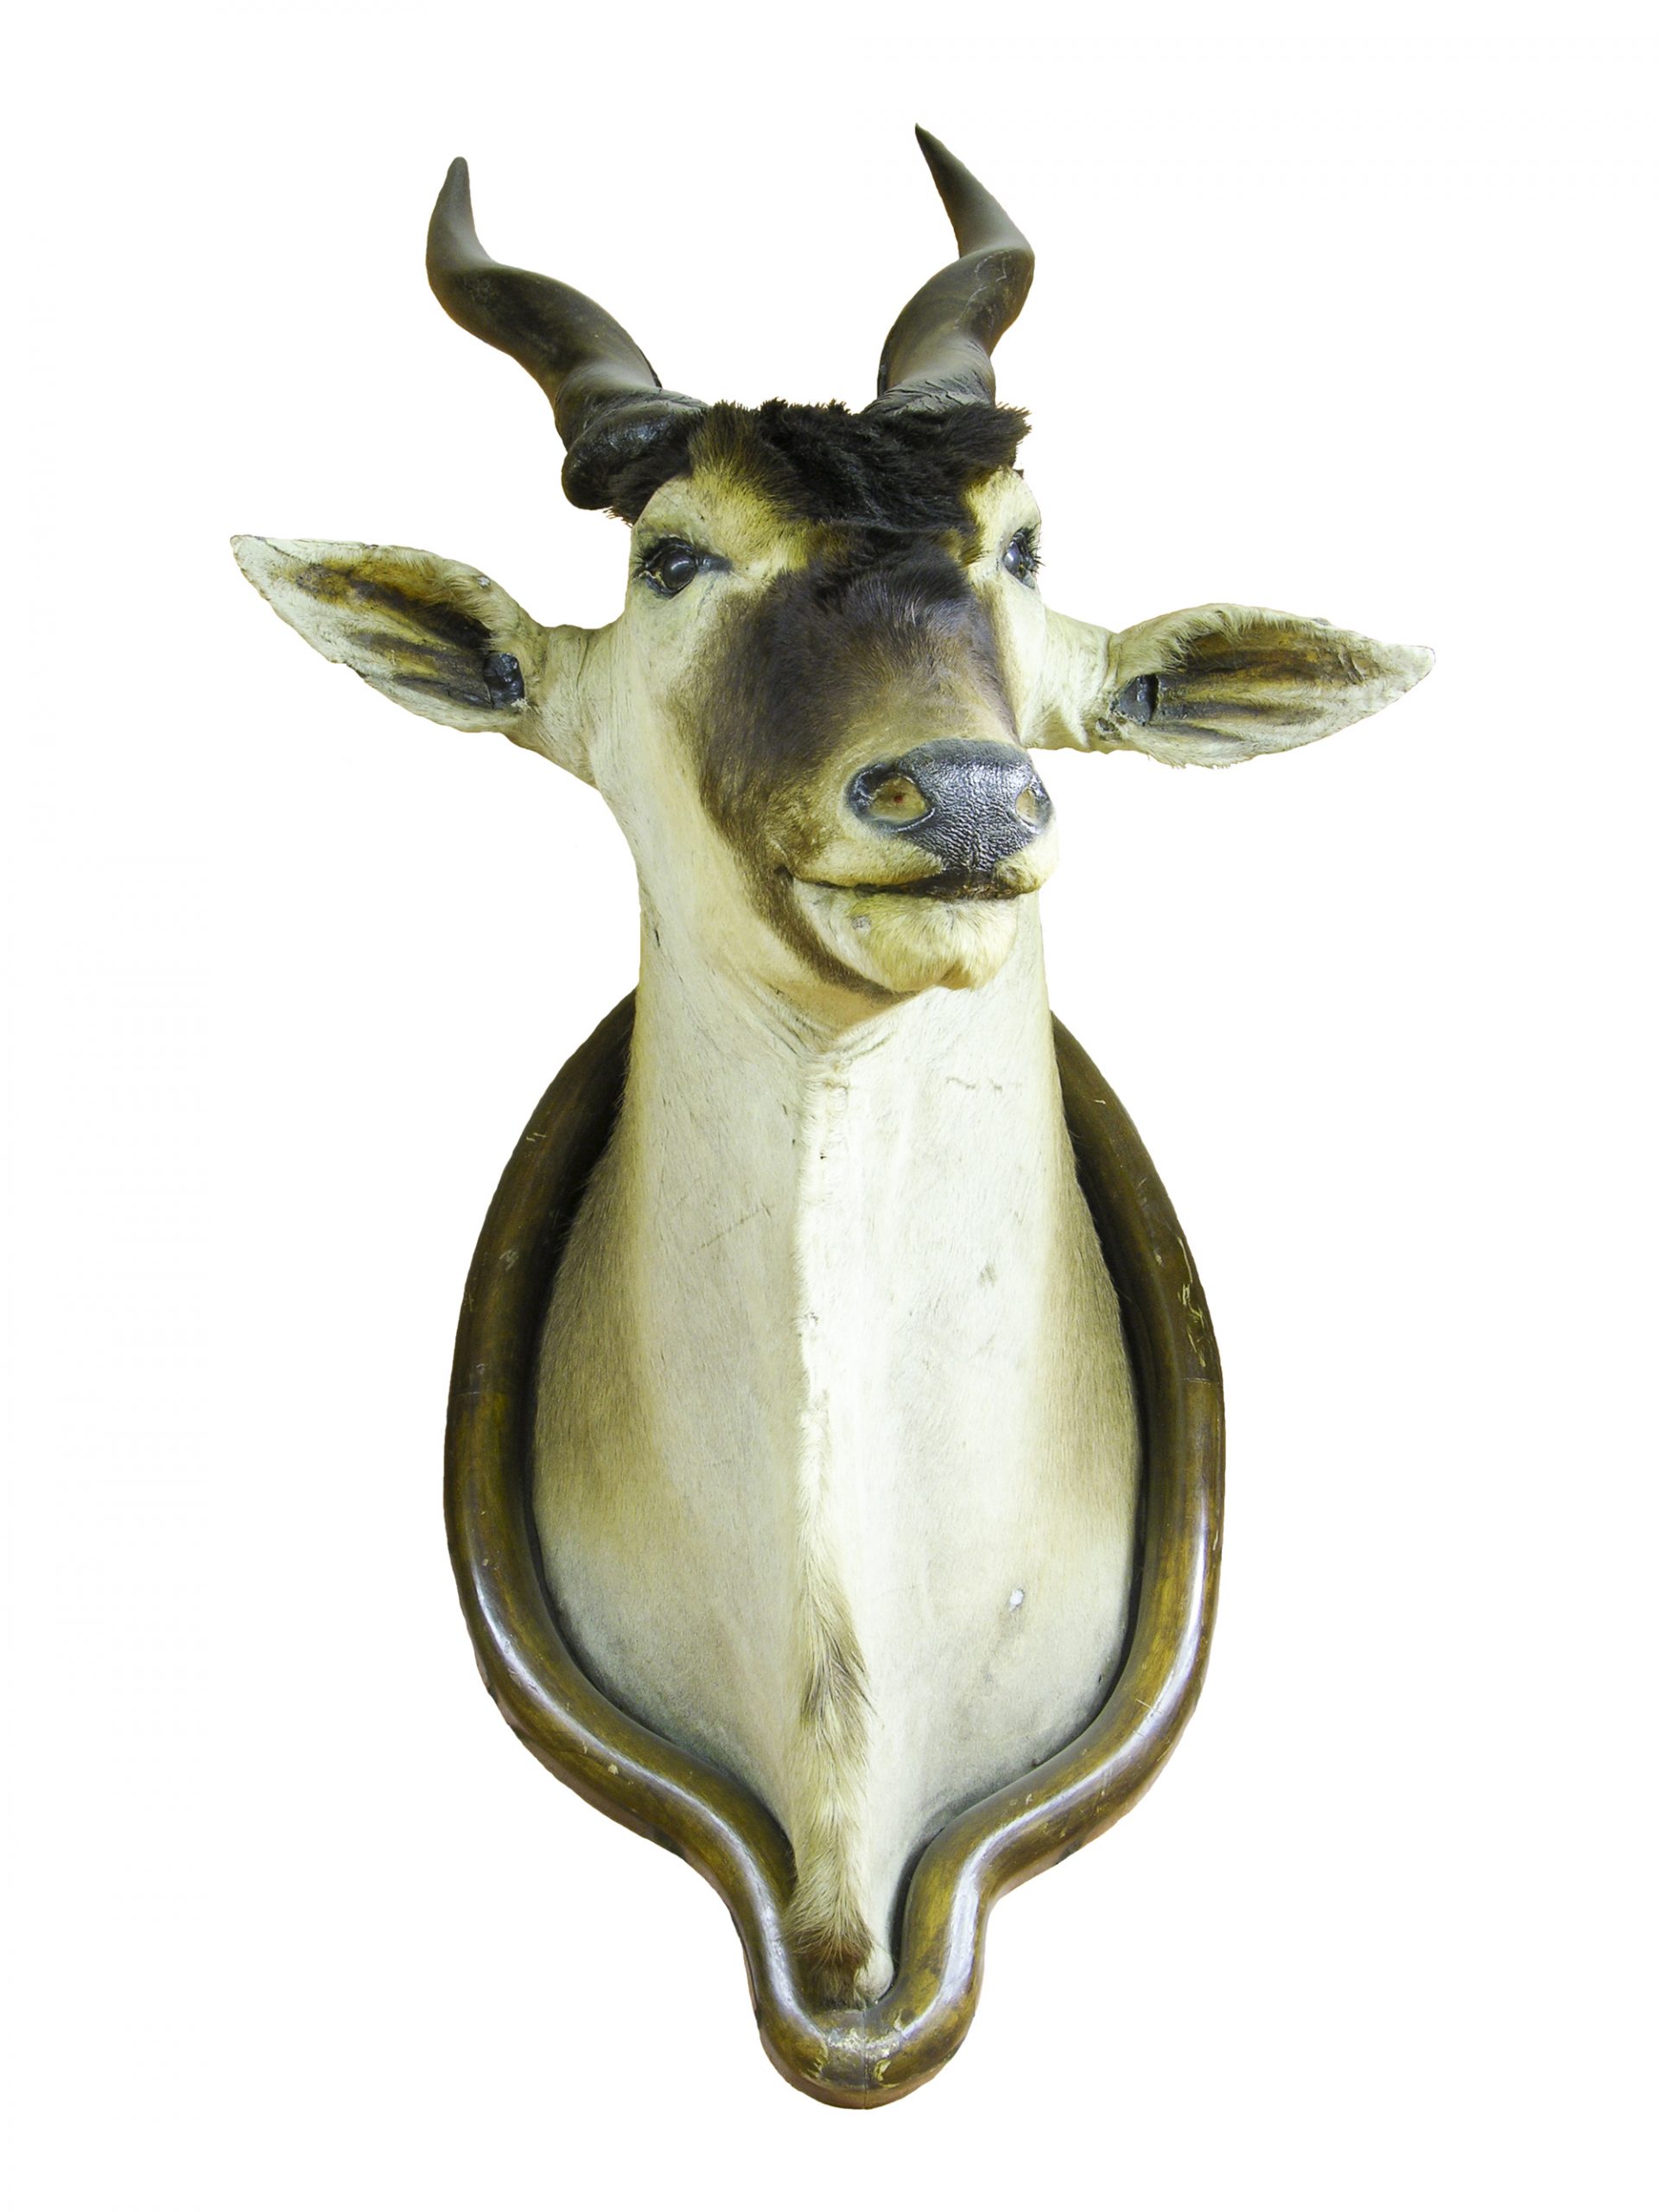 Taurotragus oryx (eland)